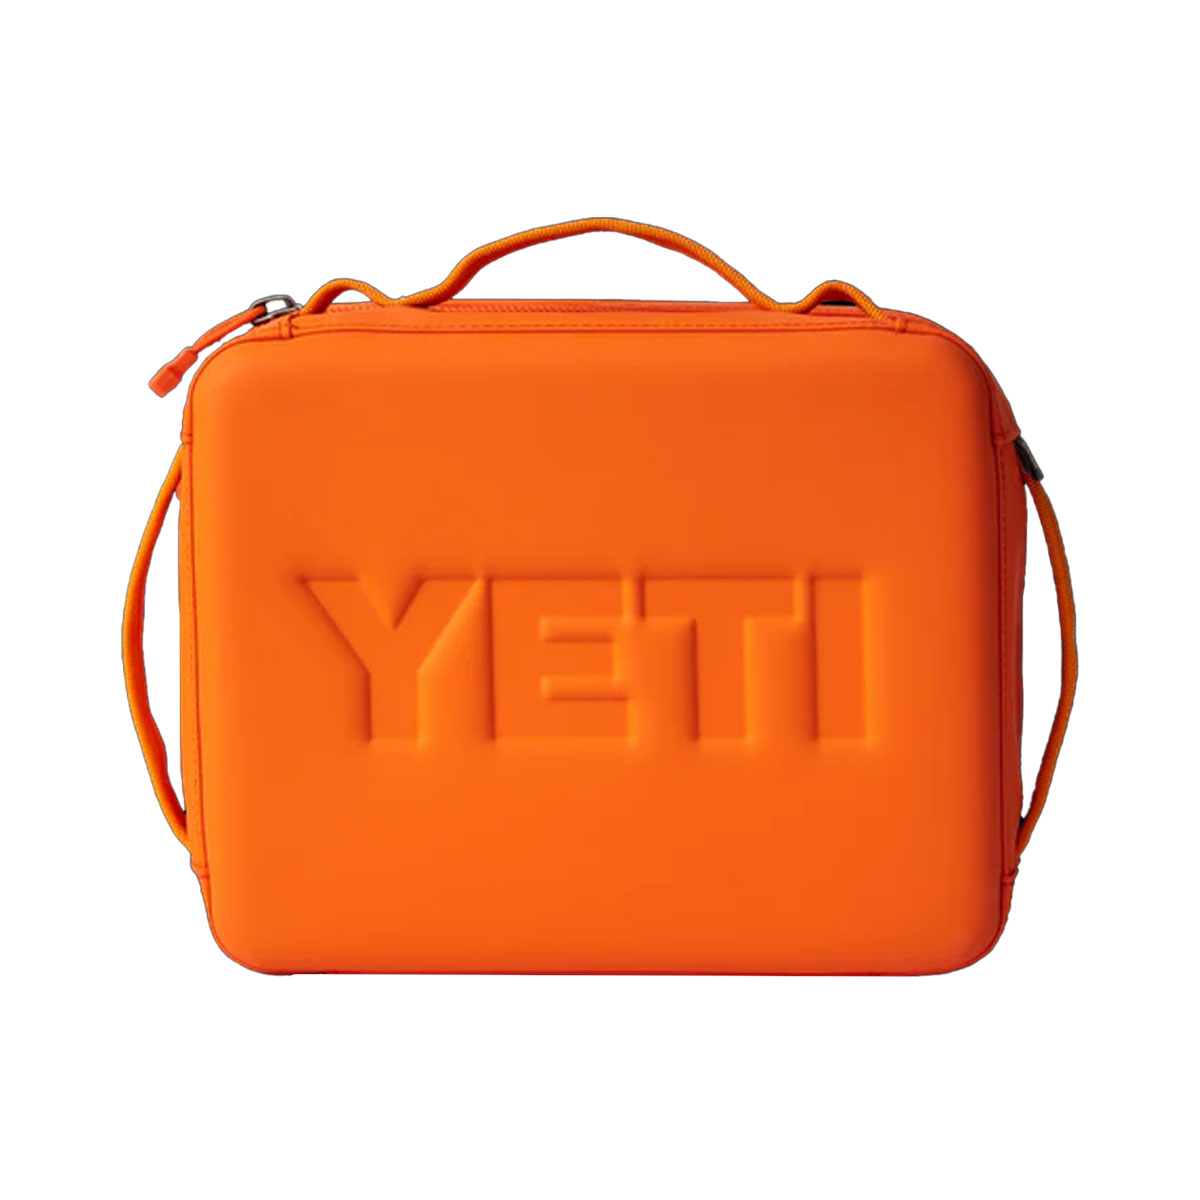 YETI - DAYTRIP LUNCH BOX